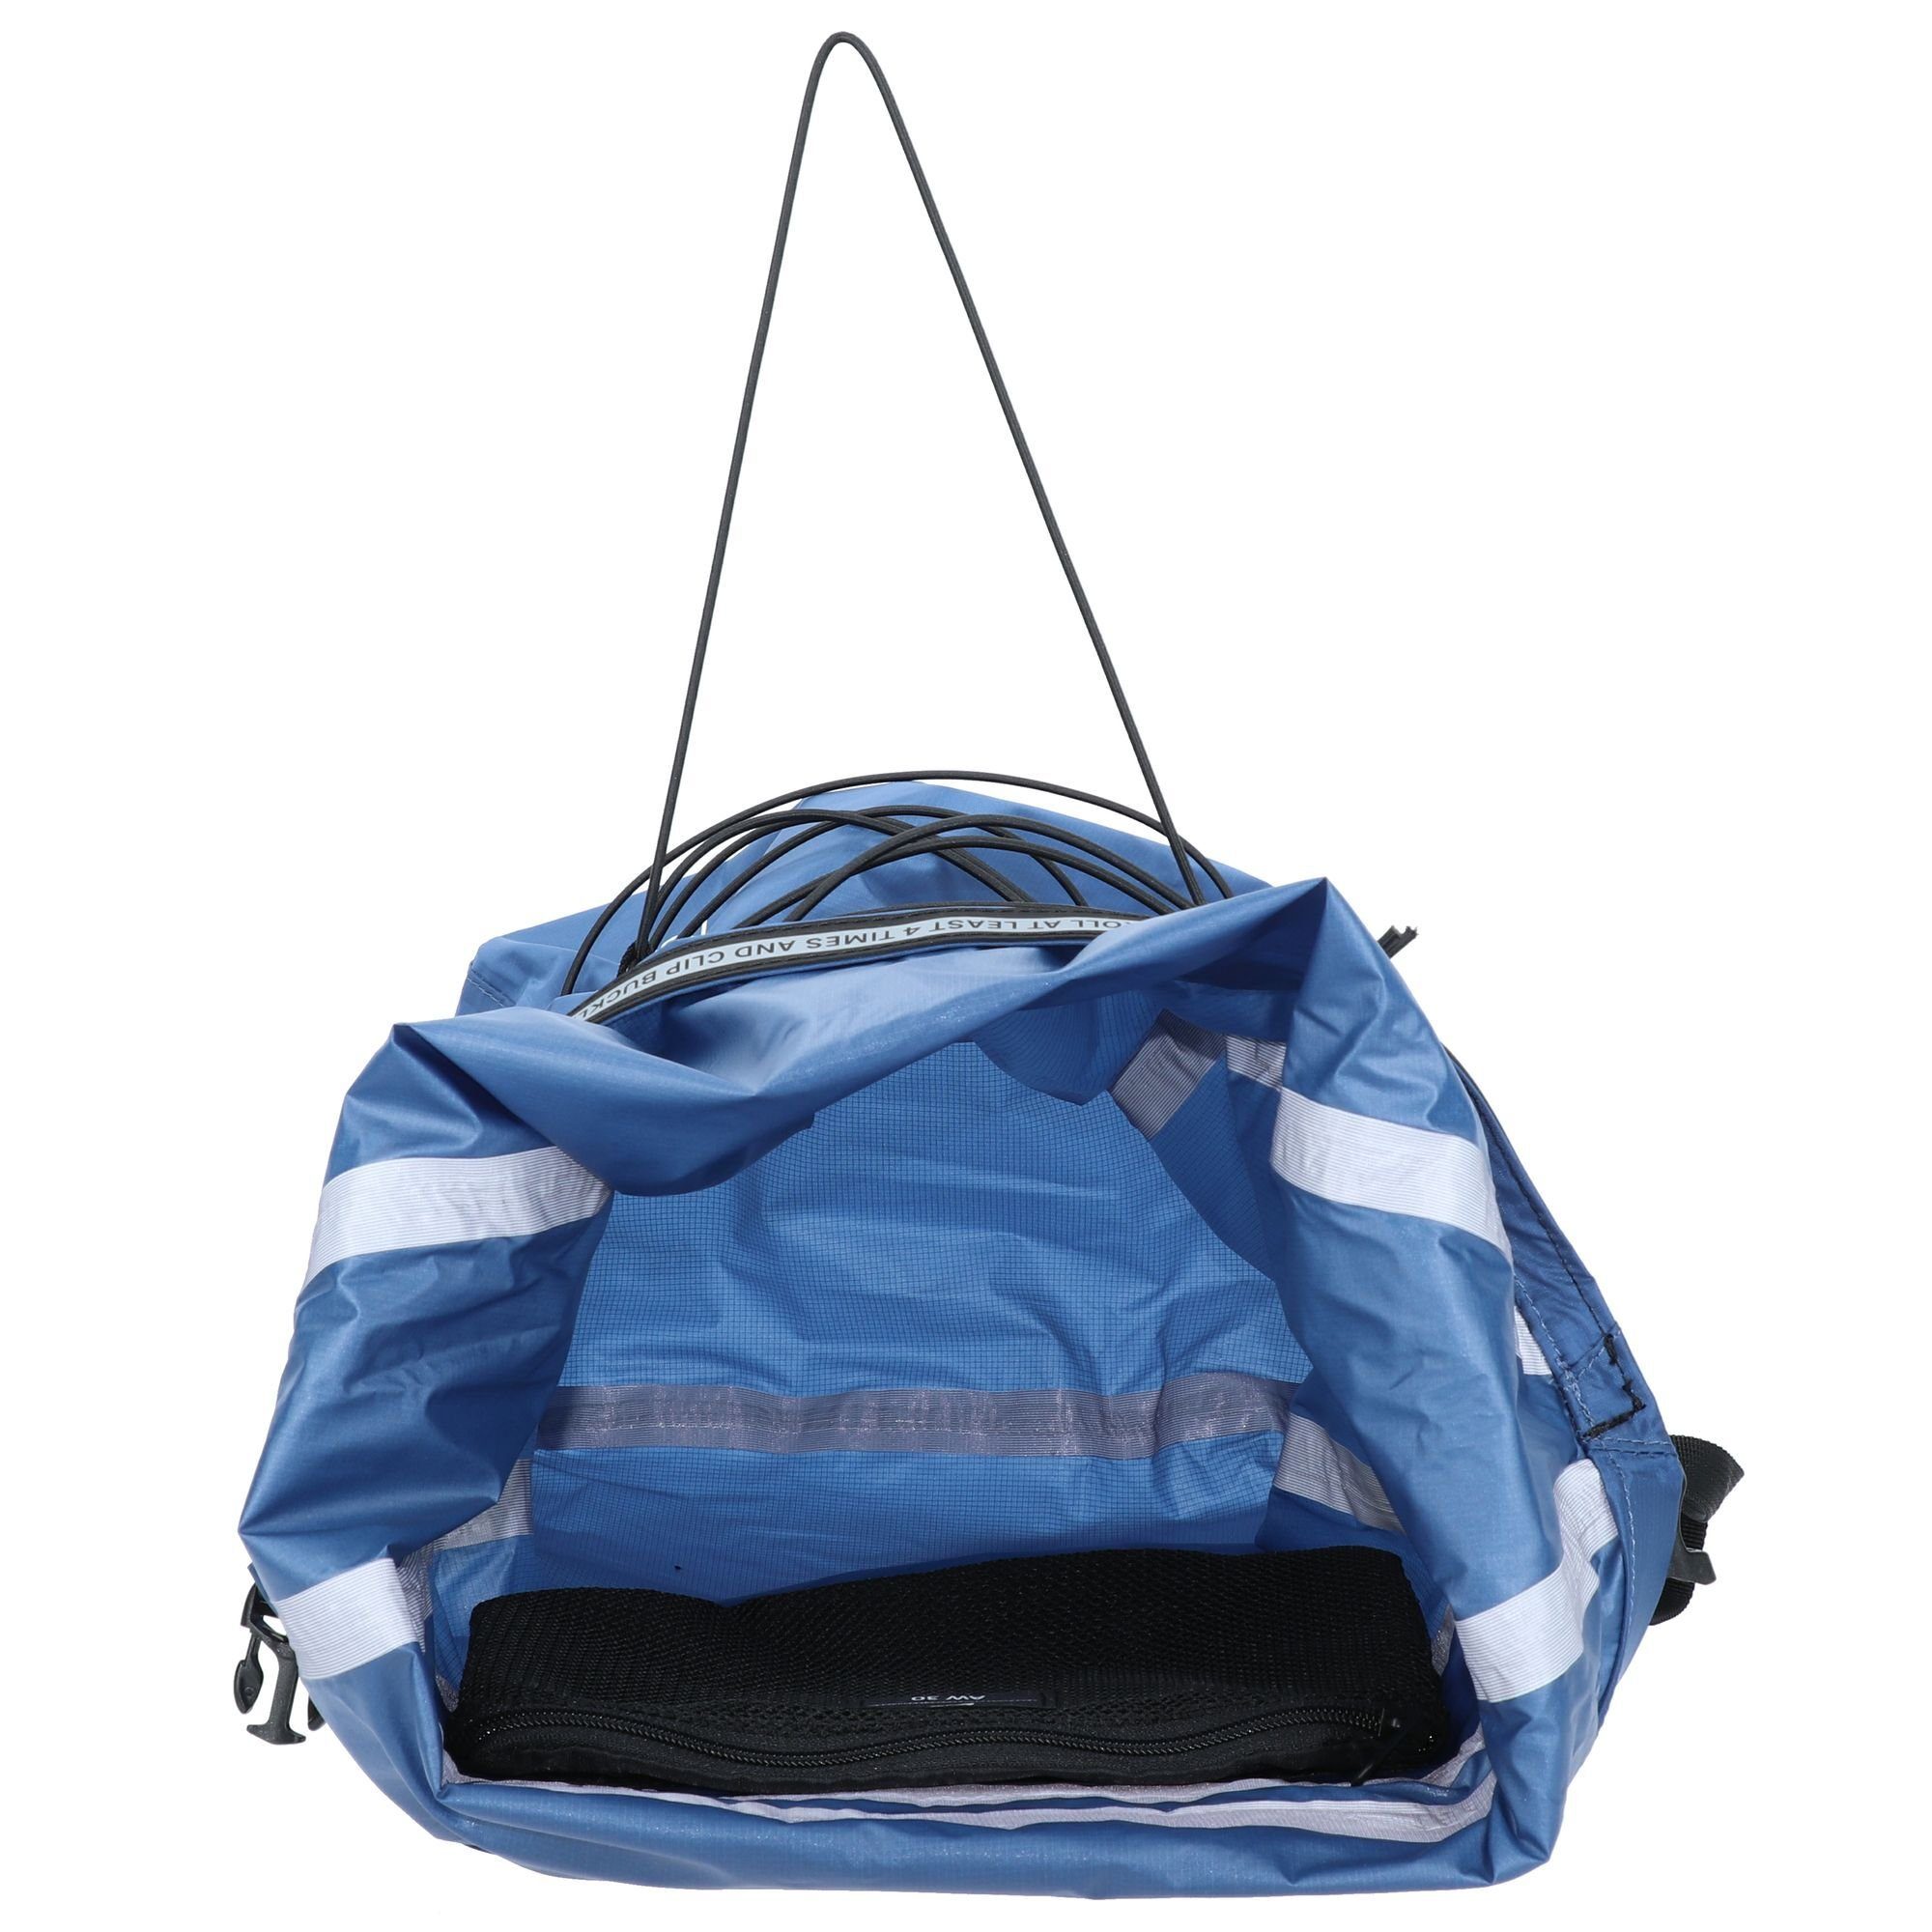 Bags, Cabinzero Nylon Rucksack Companion blue atlantic